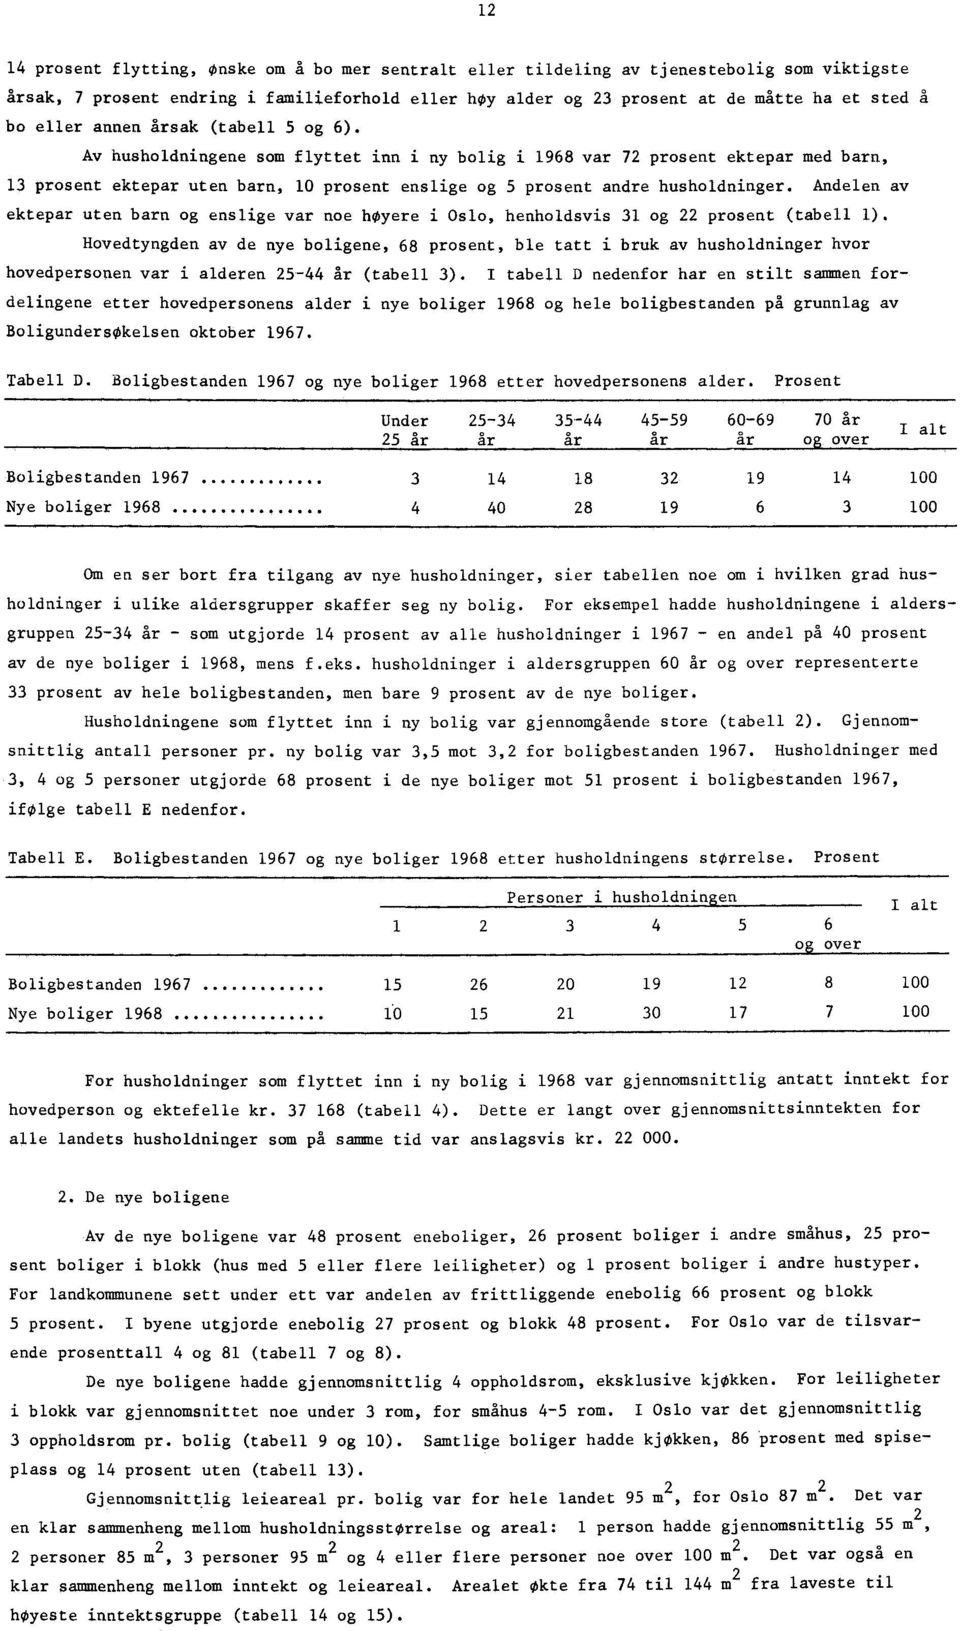 Andelen av ektepar uten barn og enslige var noe hoyere i Oslo, henholdsvis og prosent (tabell ).